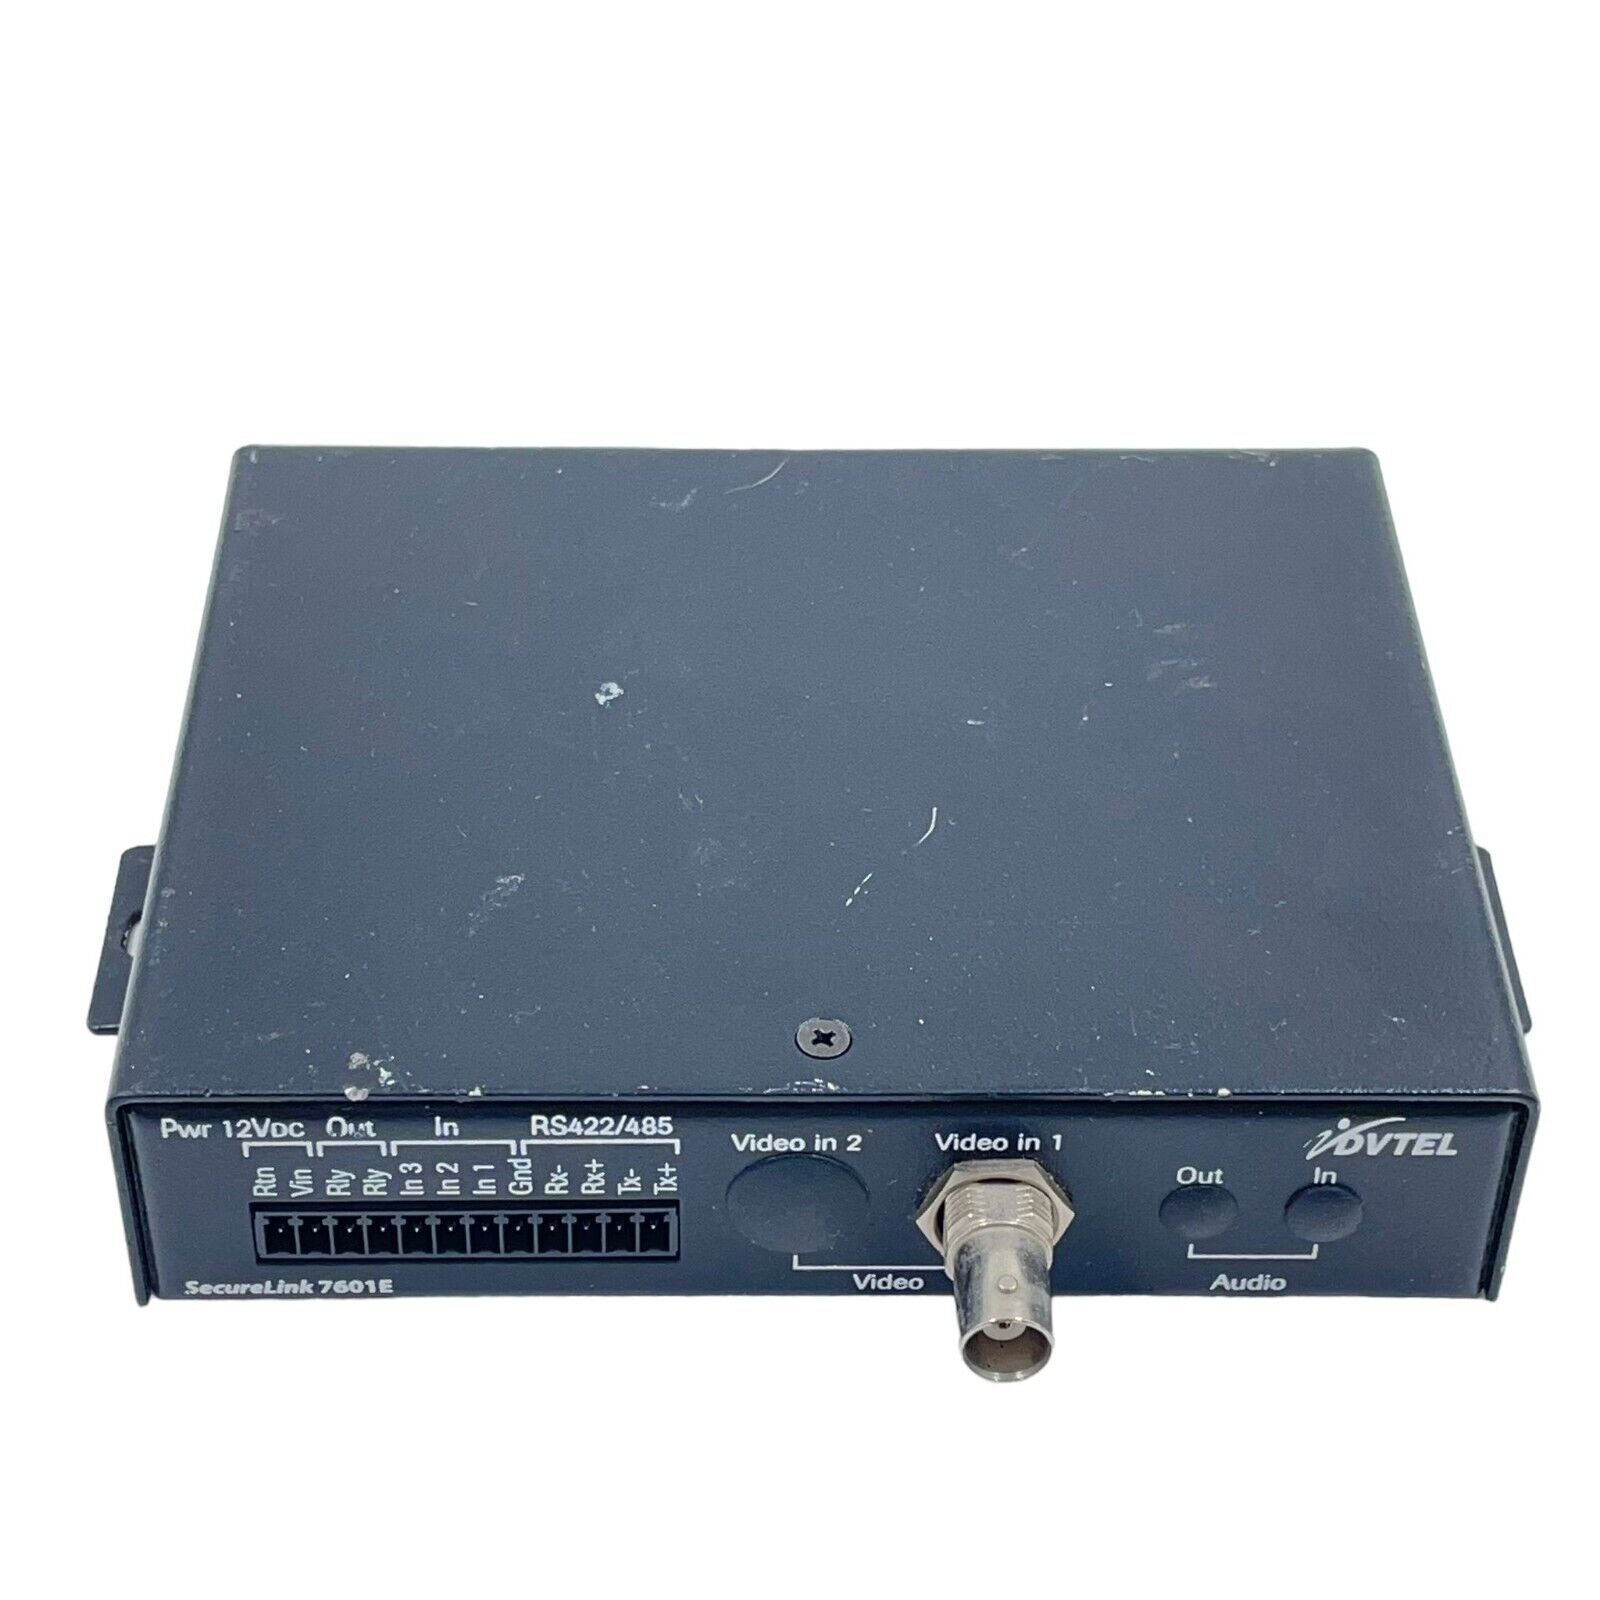 Dvtel DVT-7601E Securelink Encoder Flit Systems Video Server